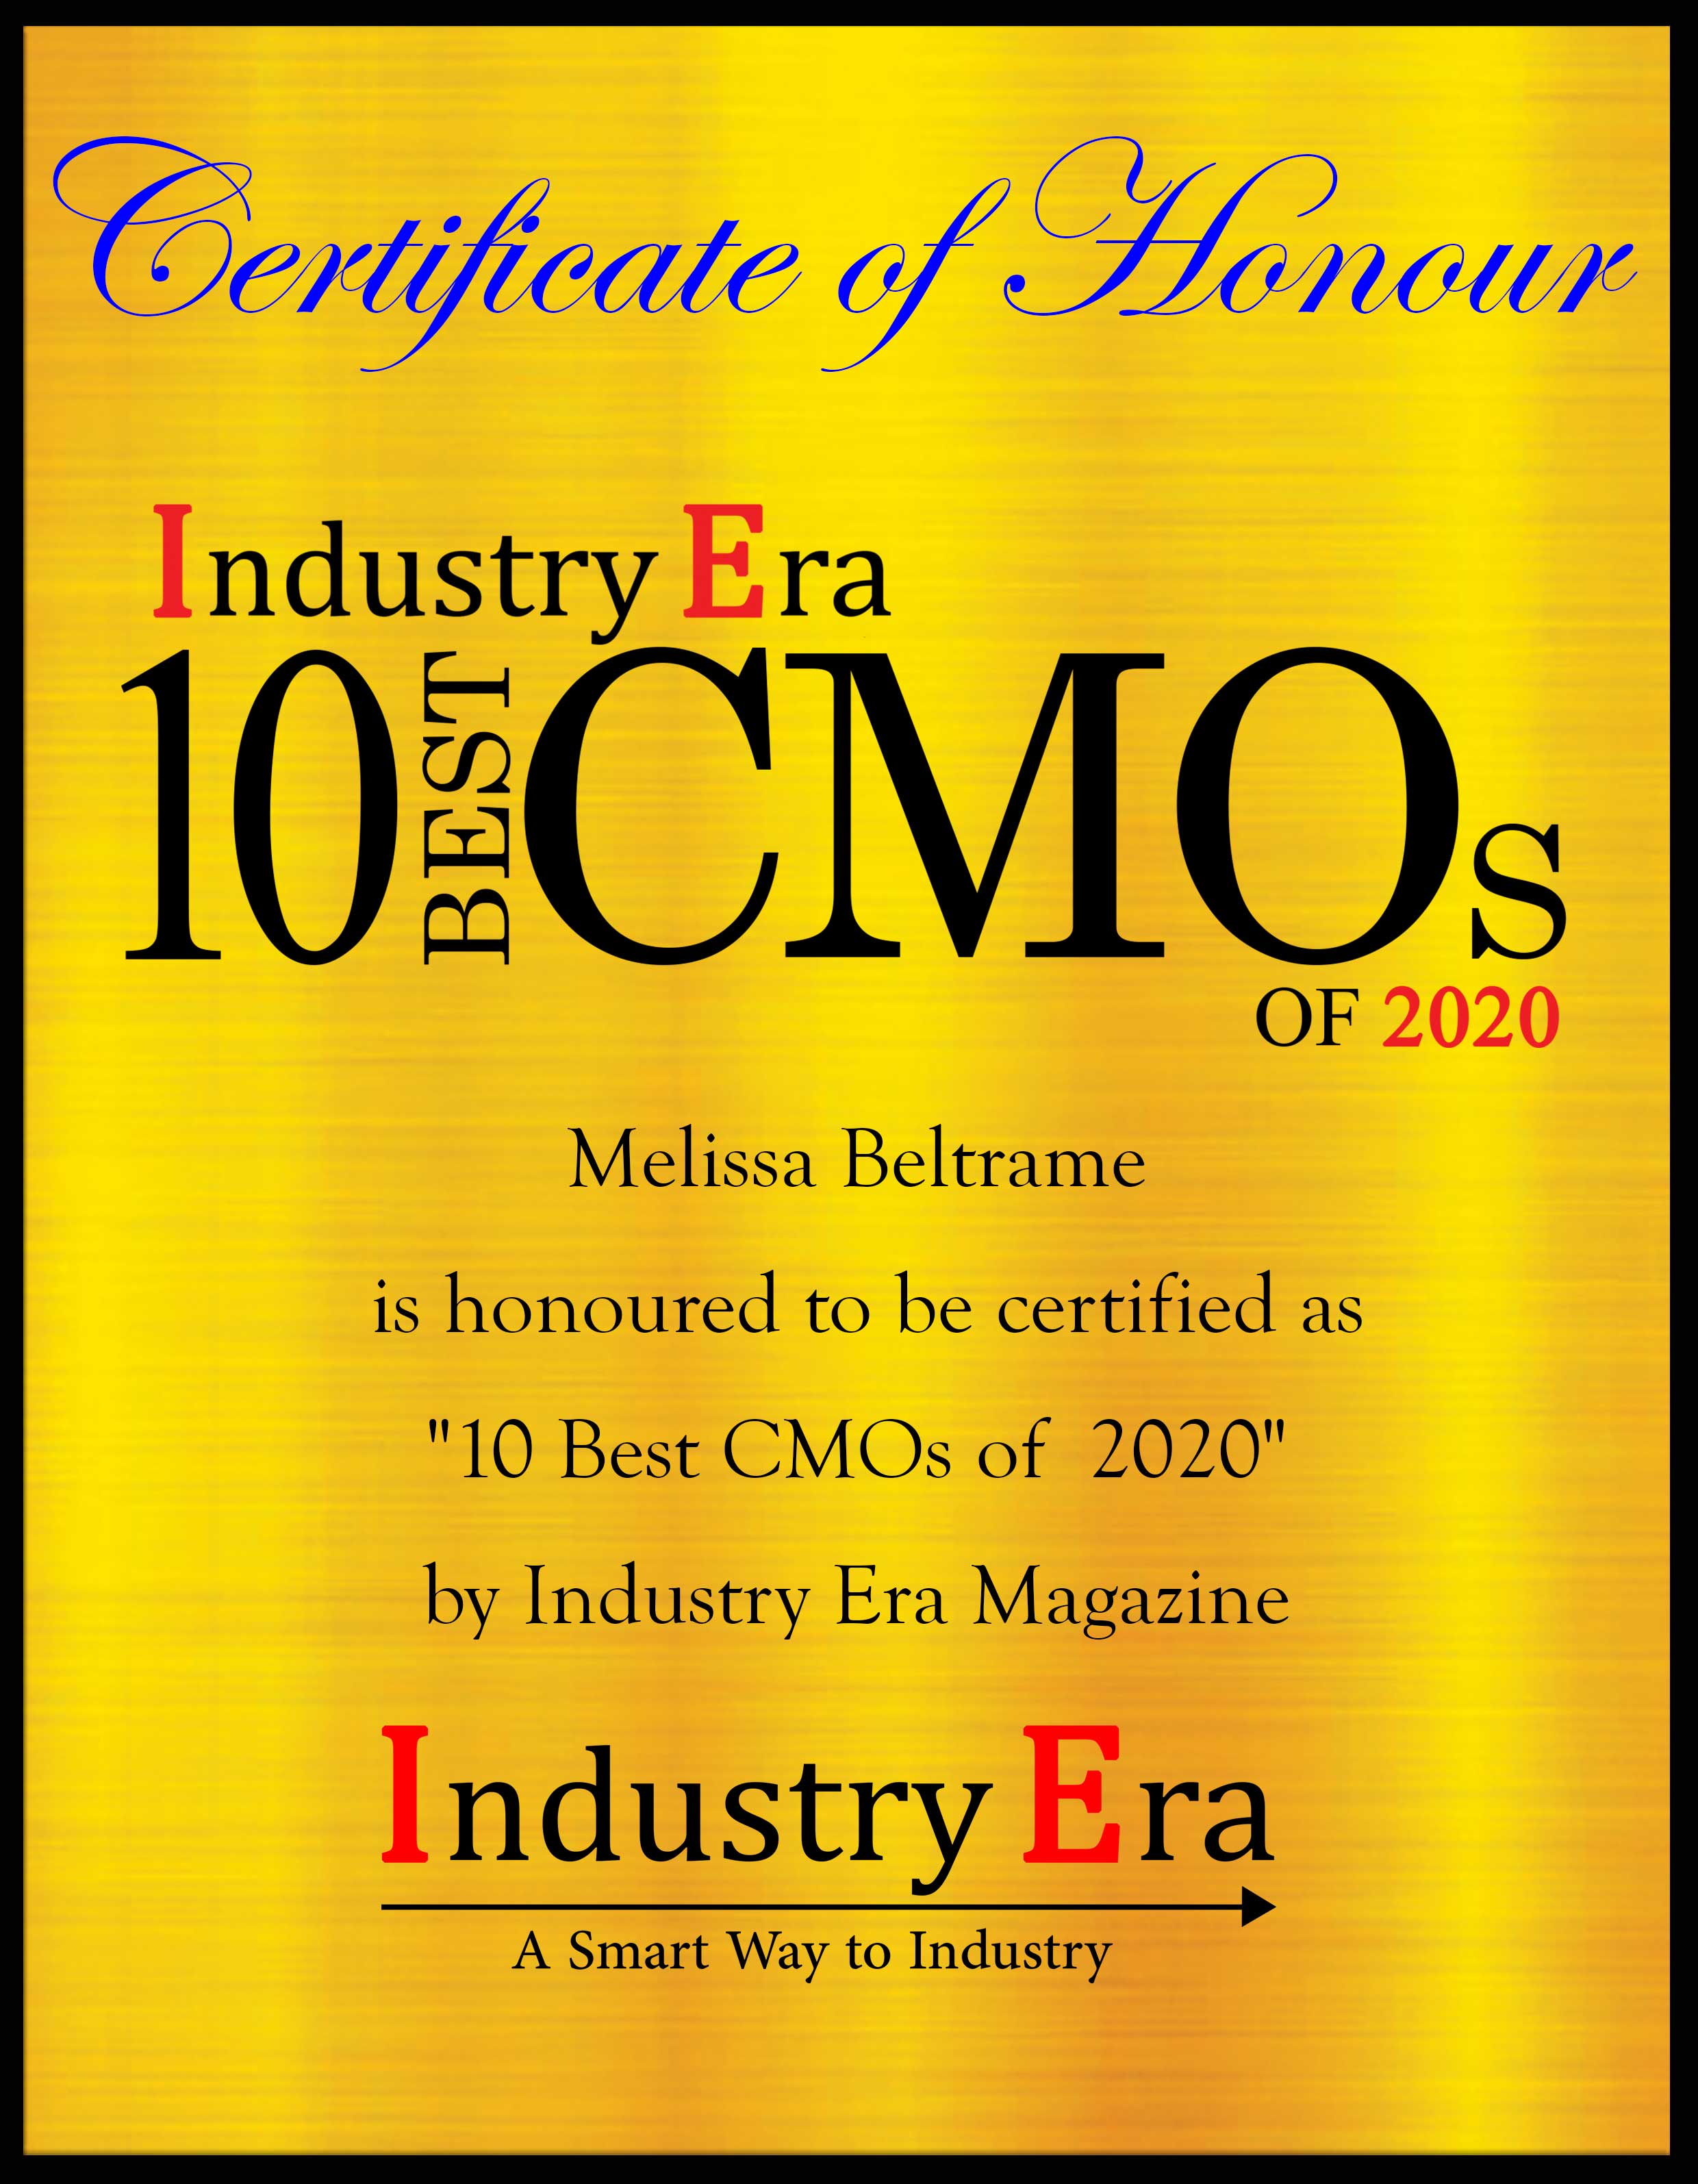 Melissa Beltrame, CMO of Lead Bank Certificate